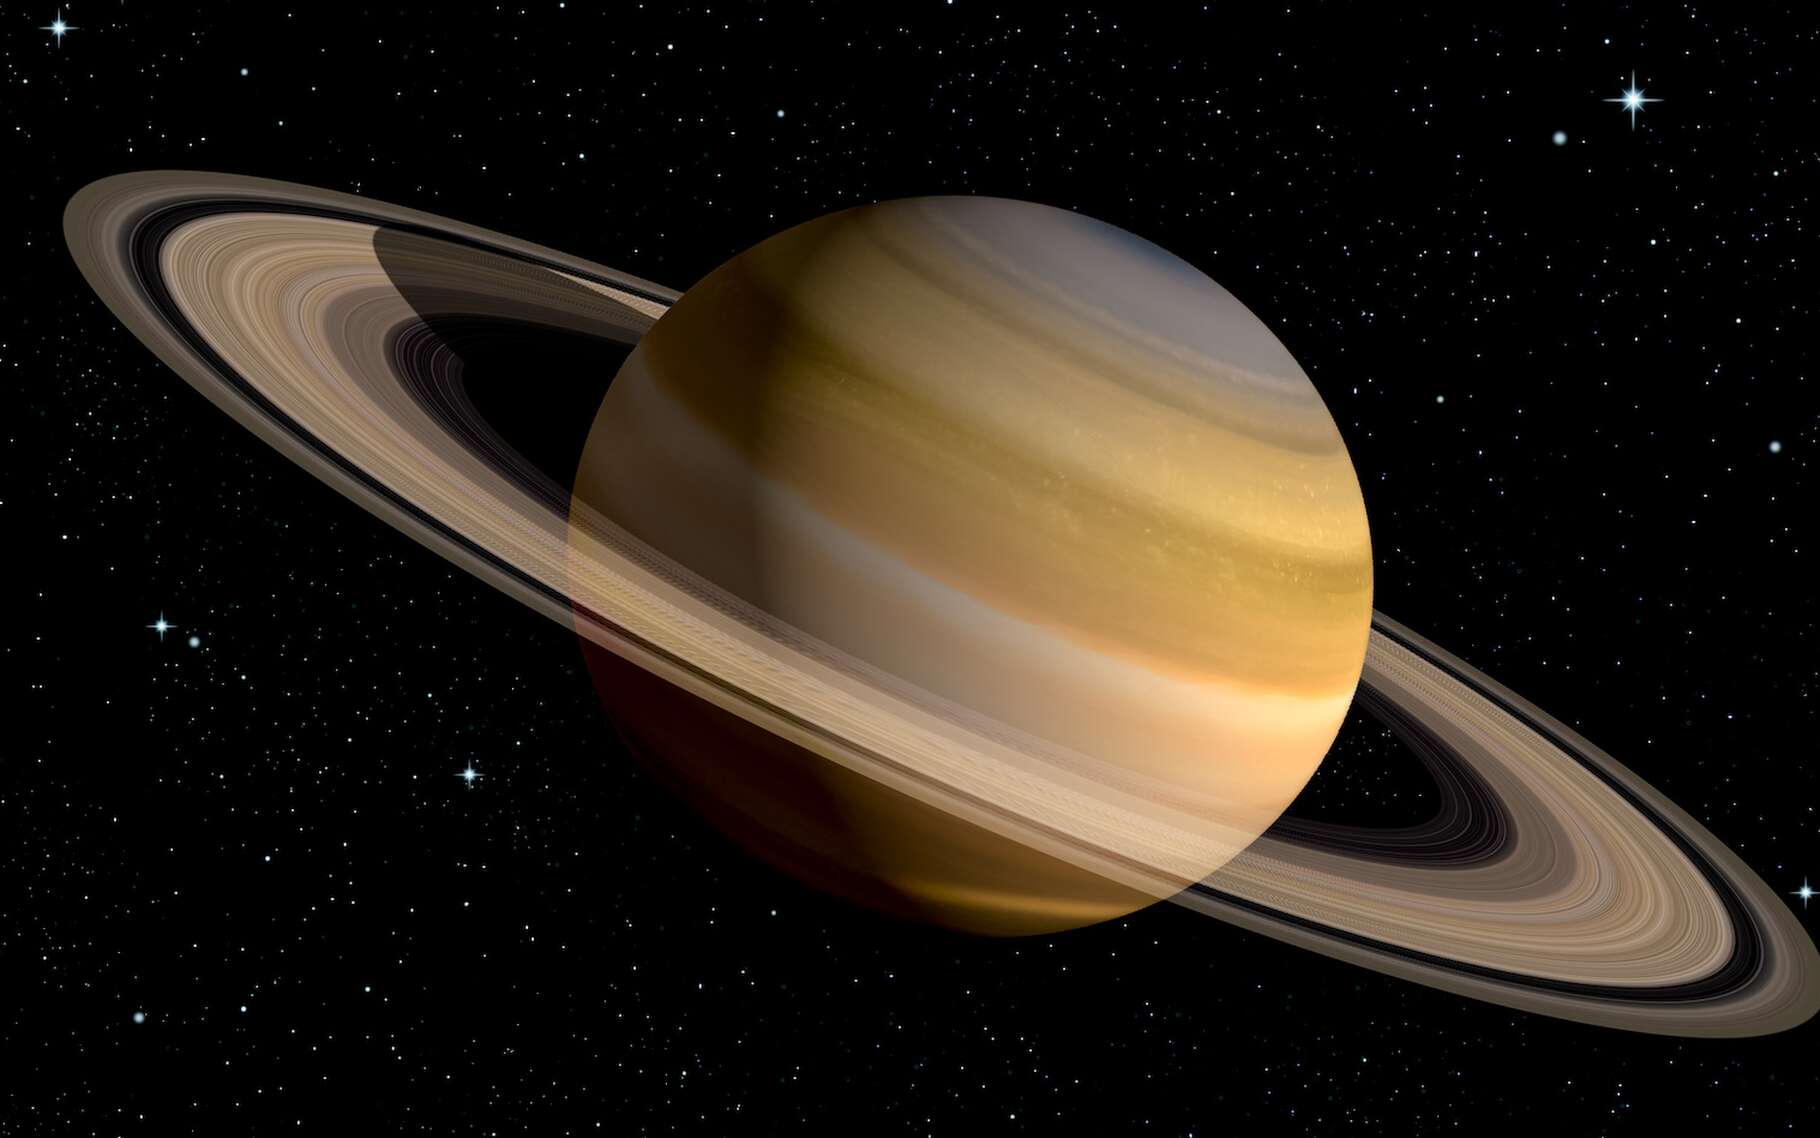 Les premières images de Saturne renvoyées par le télescope spatial James-Webb sont ahurissantes !